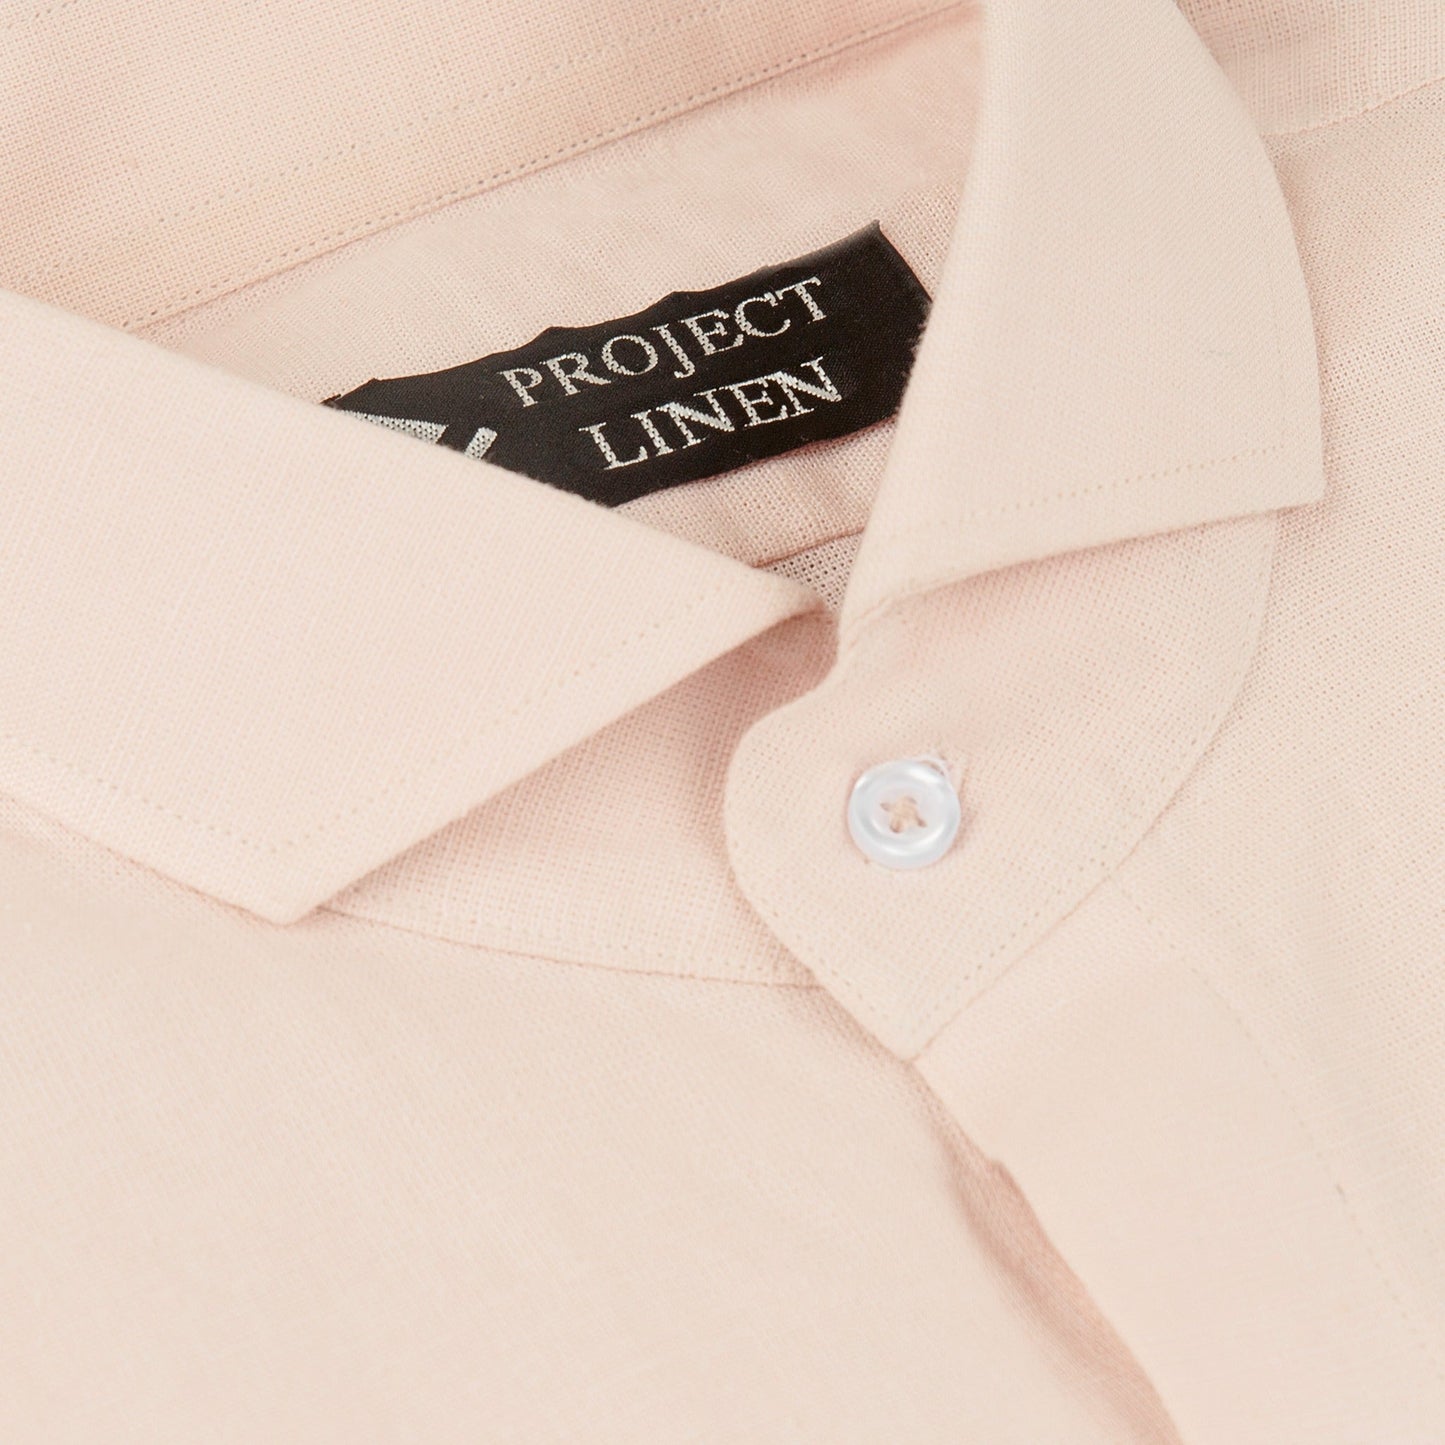 Pink Lemonade Linen Shirt - Hers